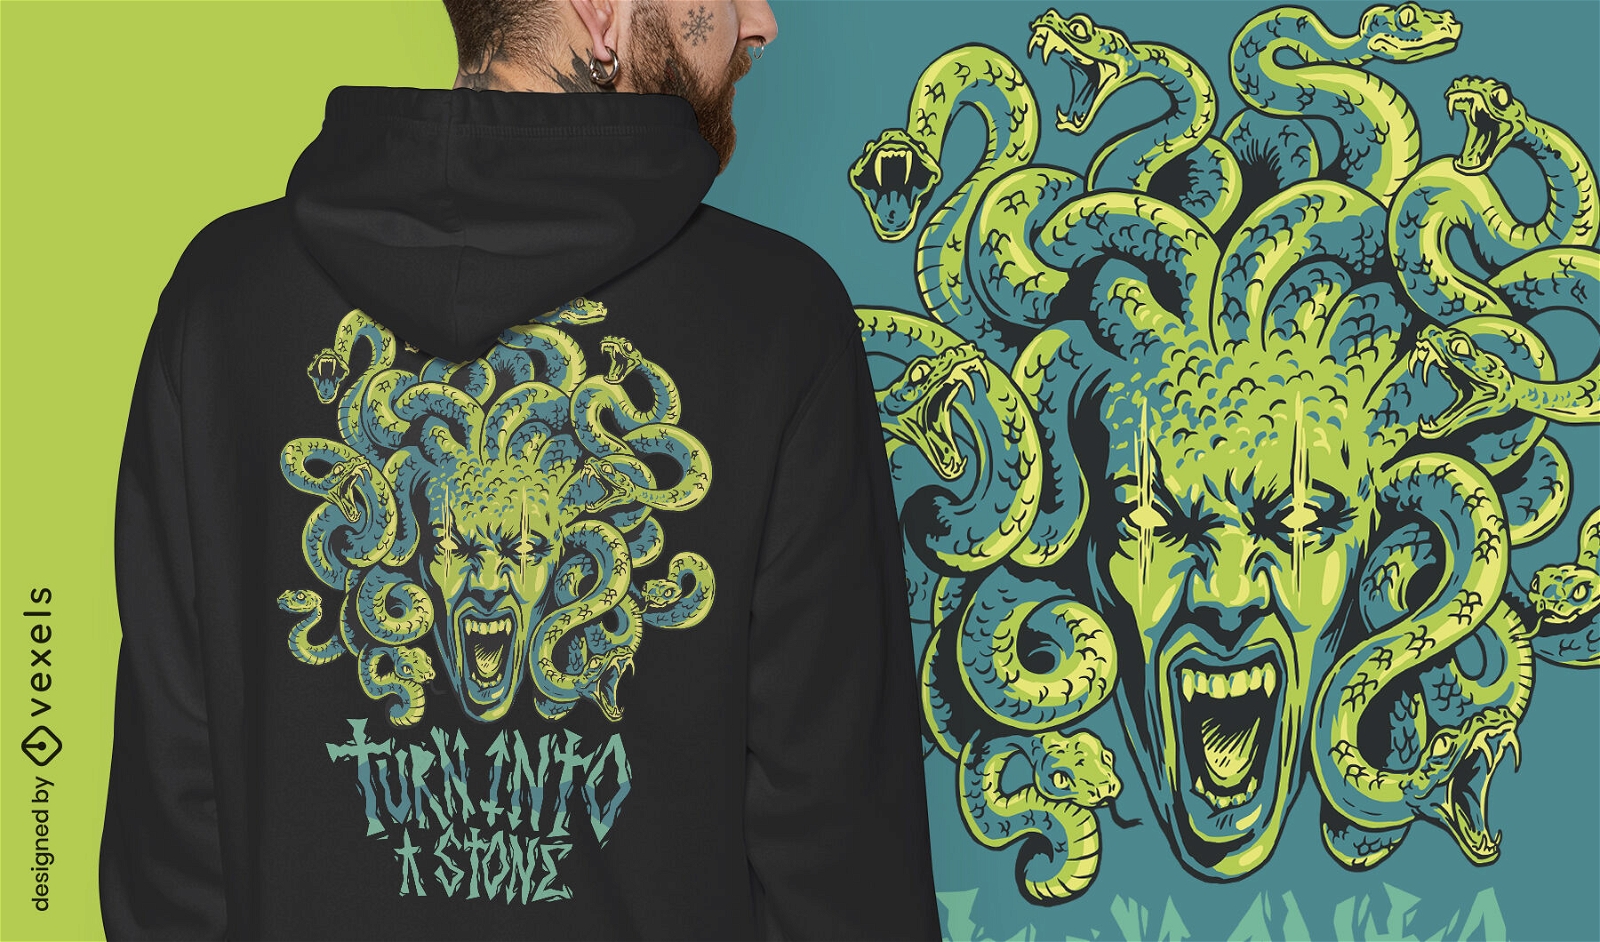 Diseño de camiseta de grecia mítica del monstruo de Medusa